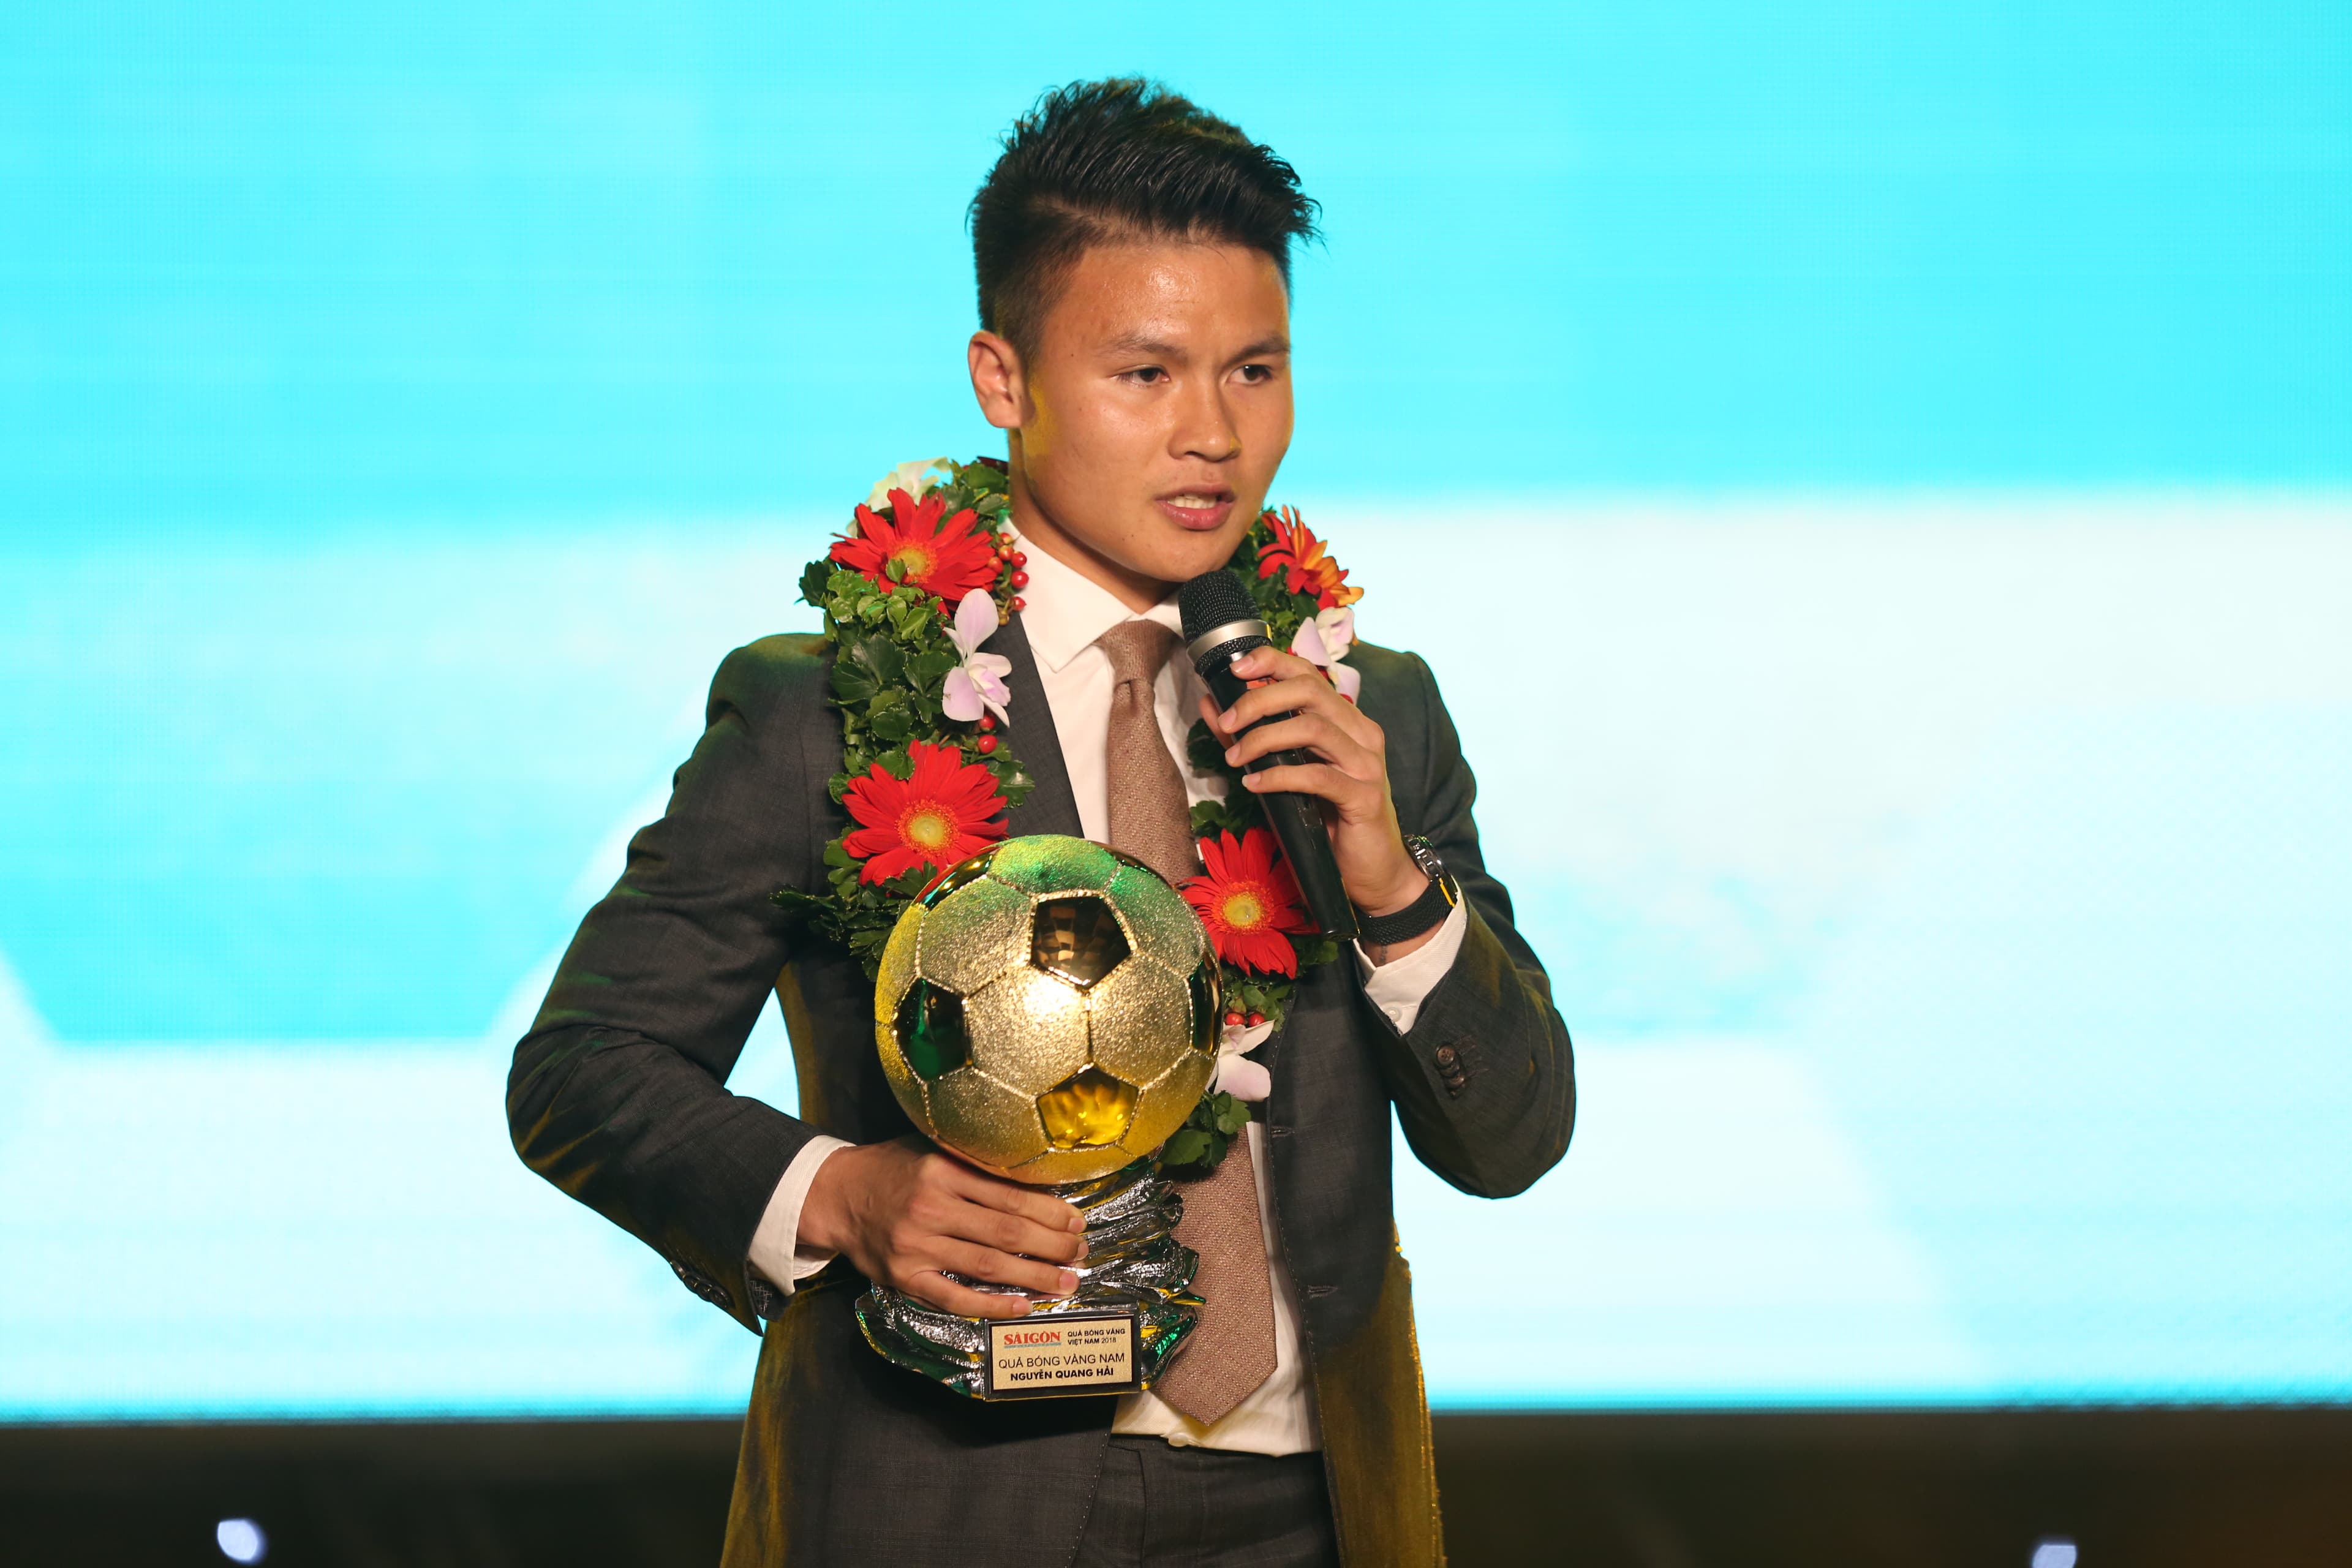 Quang Hải là nhà vô địch Quả bóng vàng năm 2018, đánh bại những đối thủ nặng ký để giành chiến thắng. Xem hình ảnh của anh để tưởng nhớ khoảnh khắc đó và chúc mừng anh!